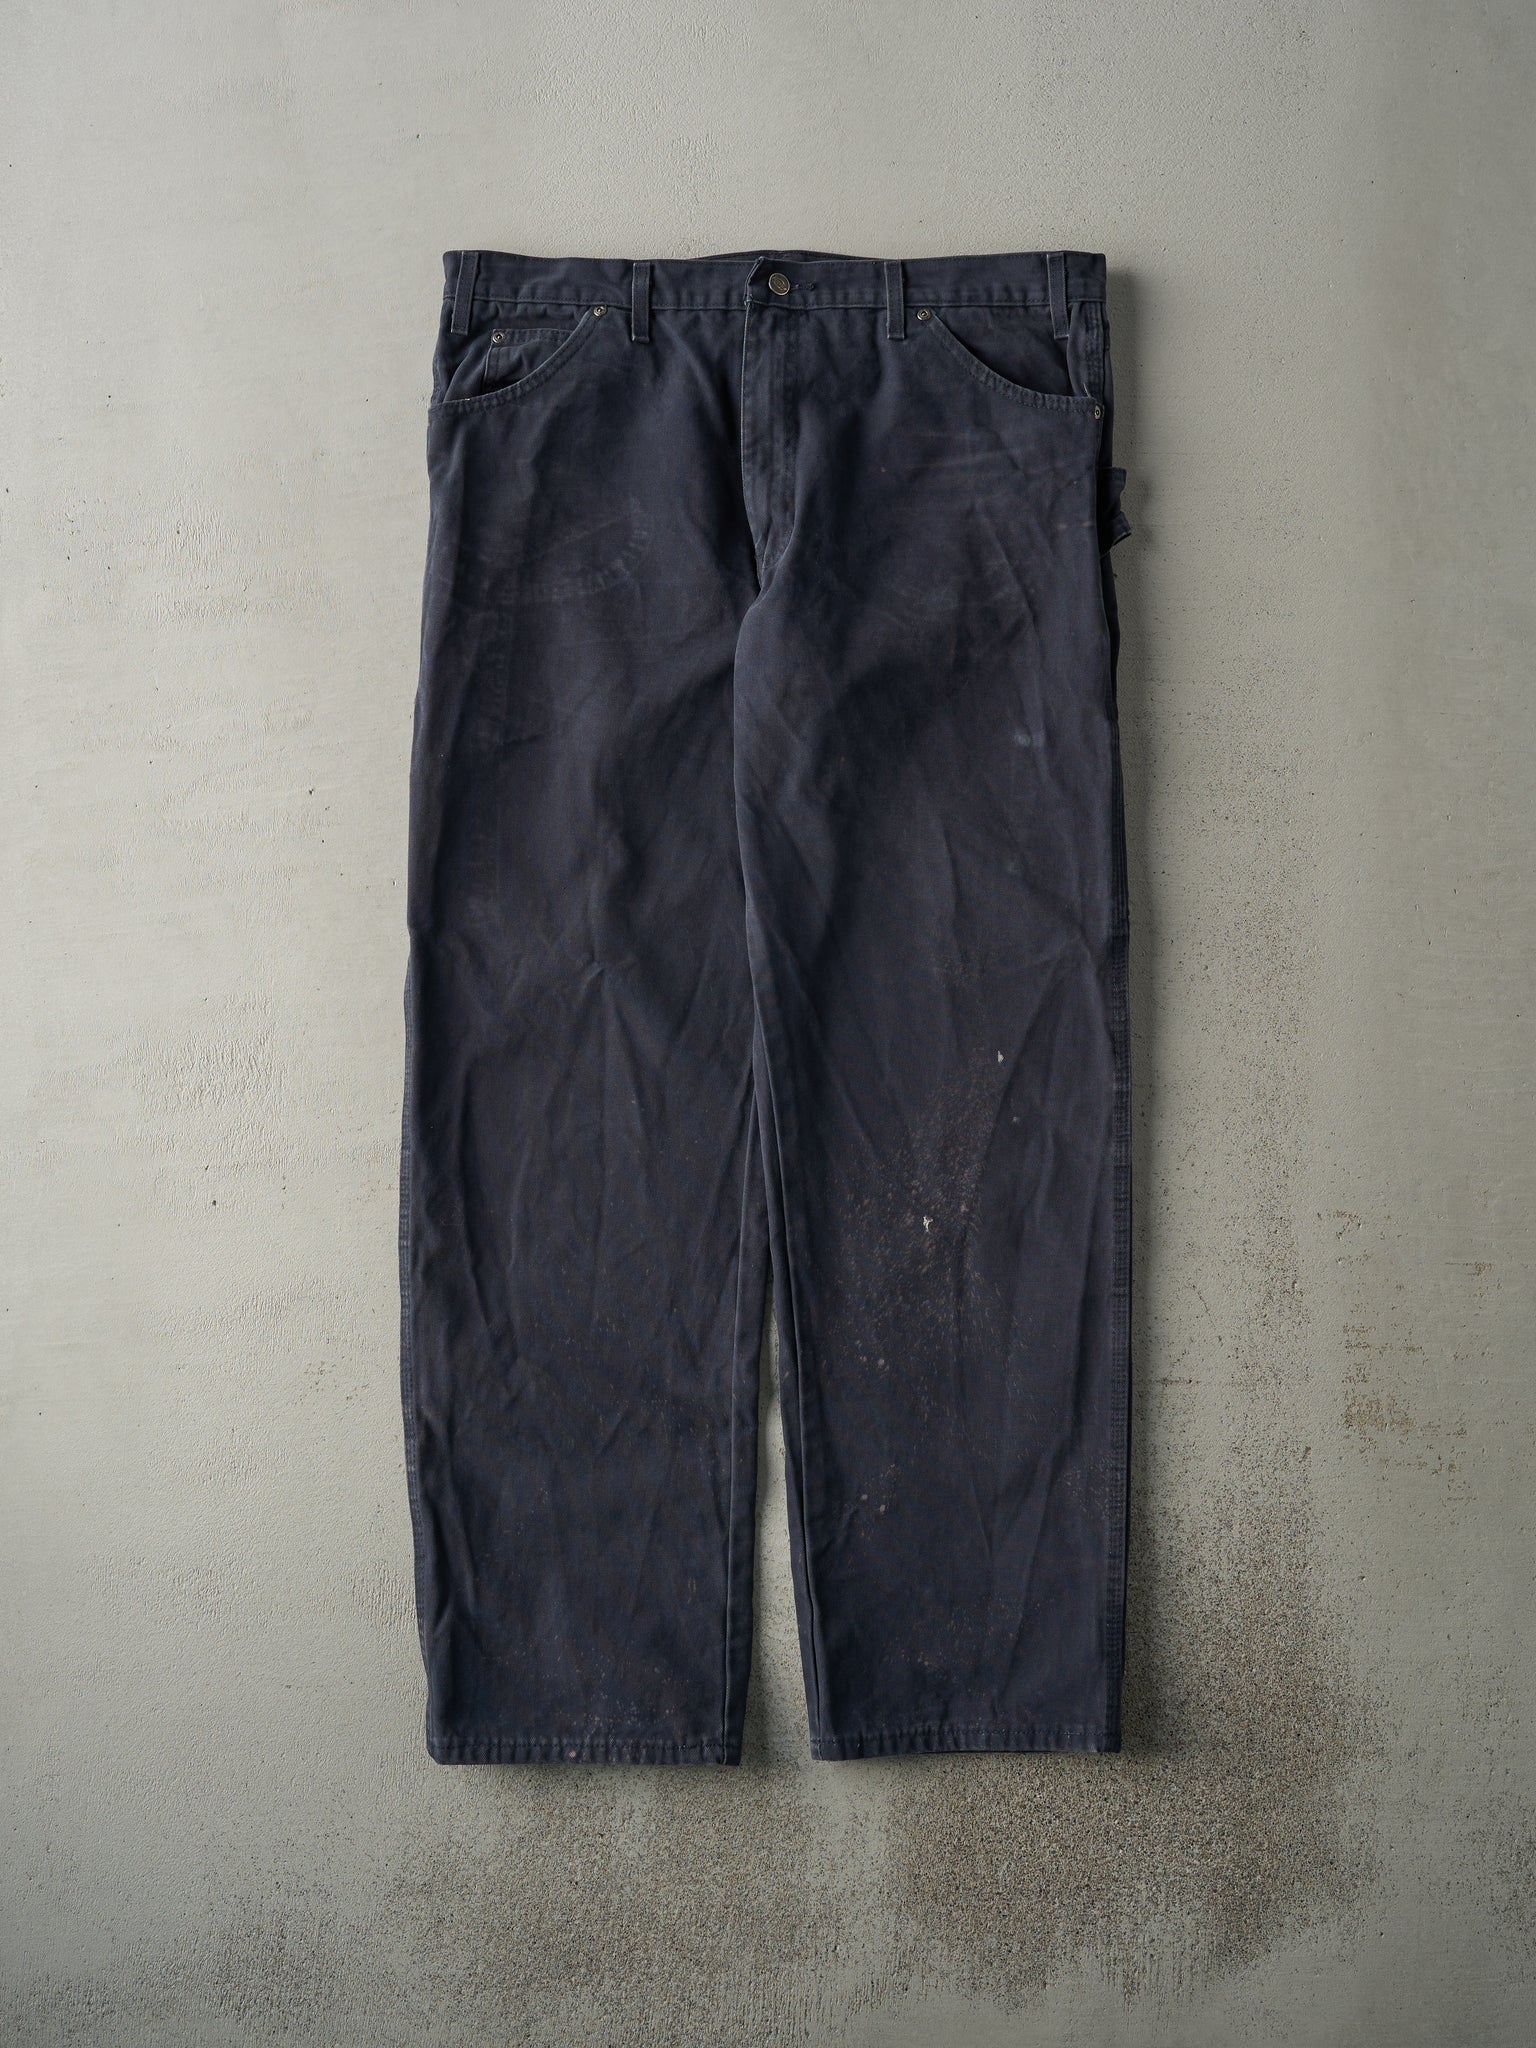 Vintage 90s Navy Blue Dickies Carpenter Pants (39x32.5)